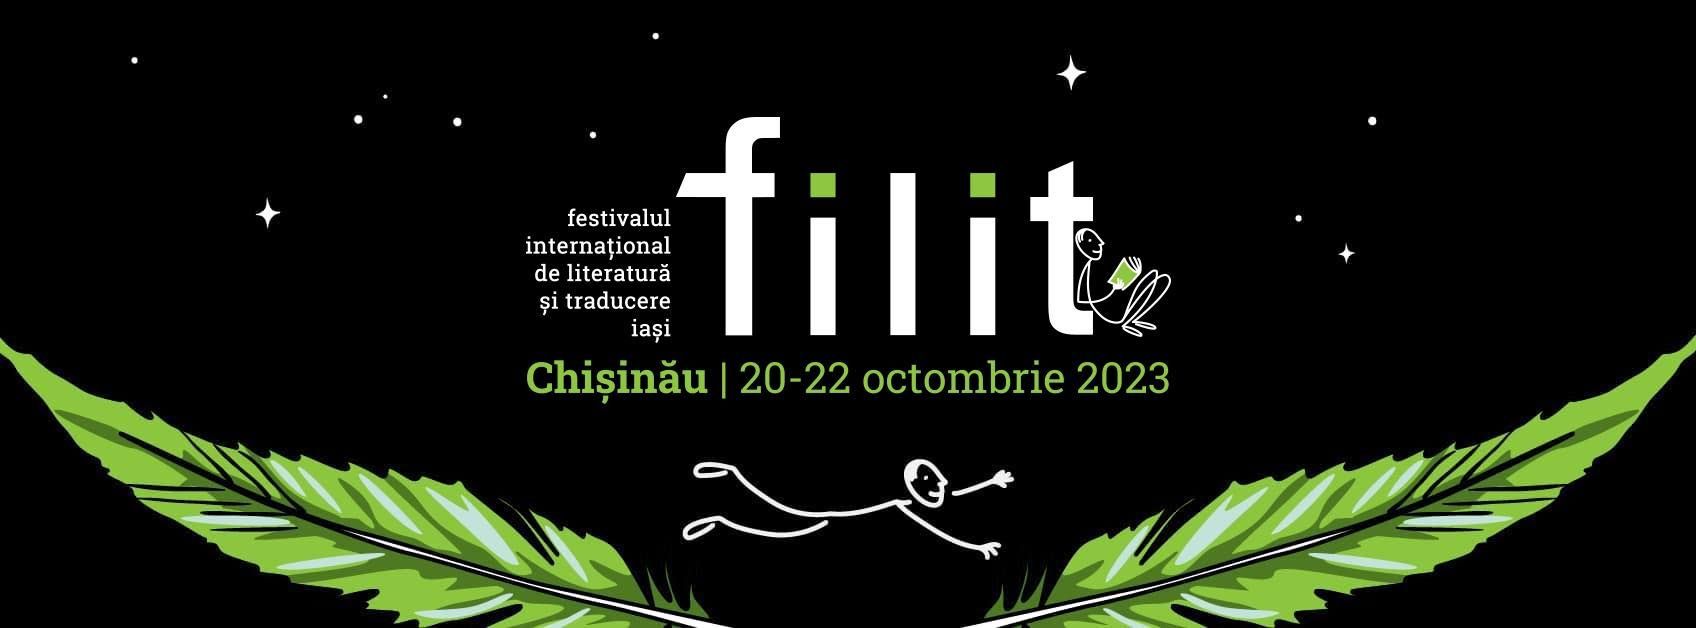 Festivalul Internațional de Literatură și Traducere Iași – FILIT vine la Chișinău. Devino voluntar în cadrul său